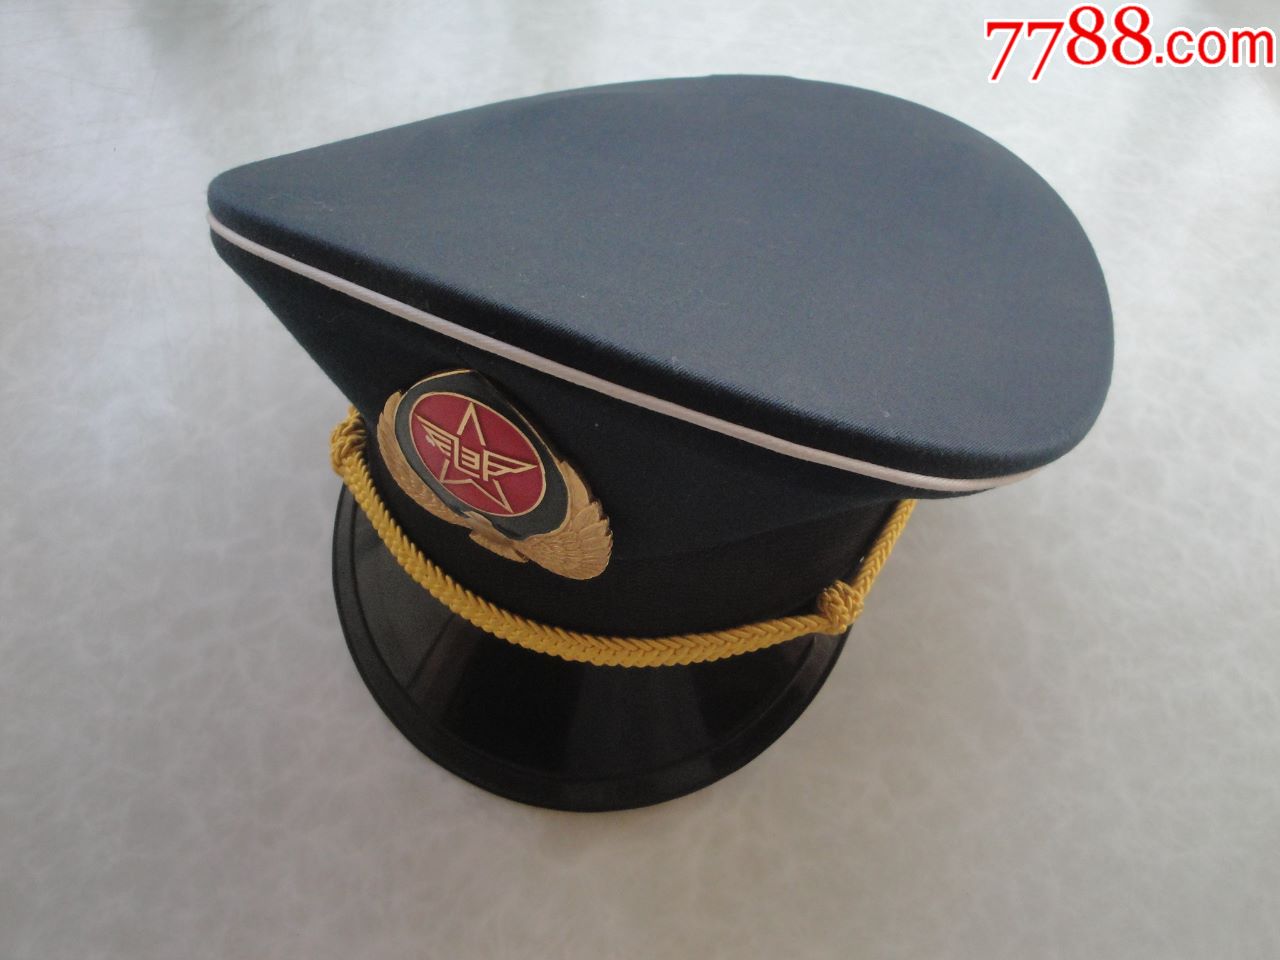 邮政帽子(58号)